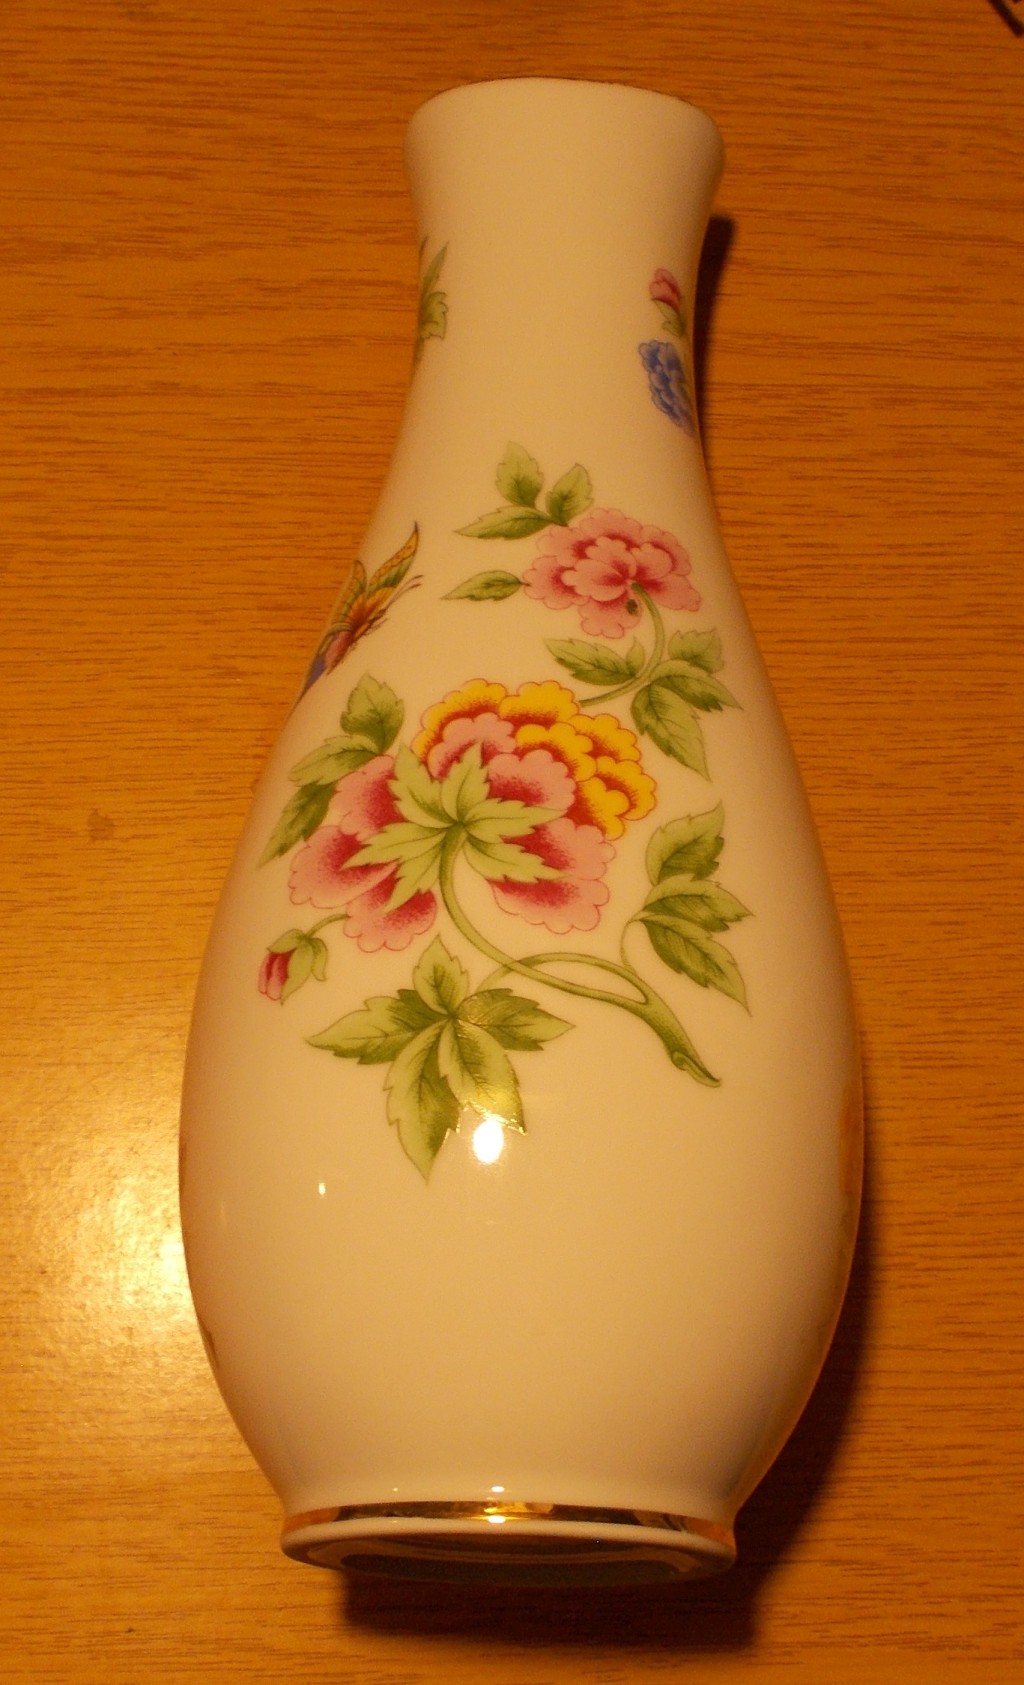 Porcelán virág mintás szép váza - Holloháza

Porcelán Hollóházi virág mintás szép váza a képen látható állapotban.

